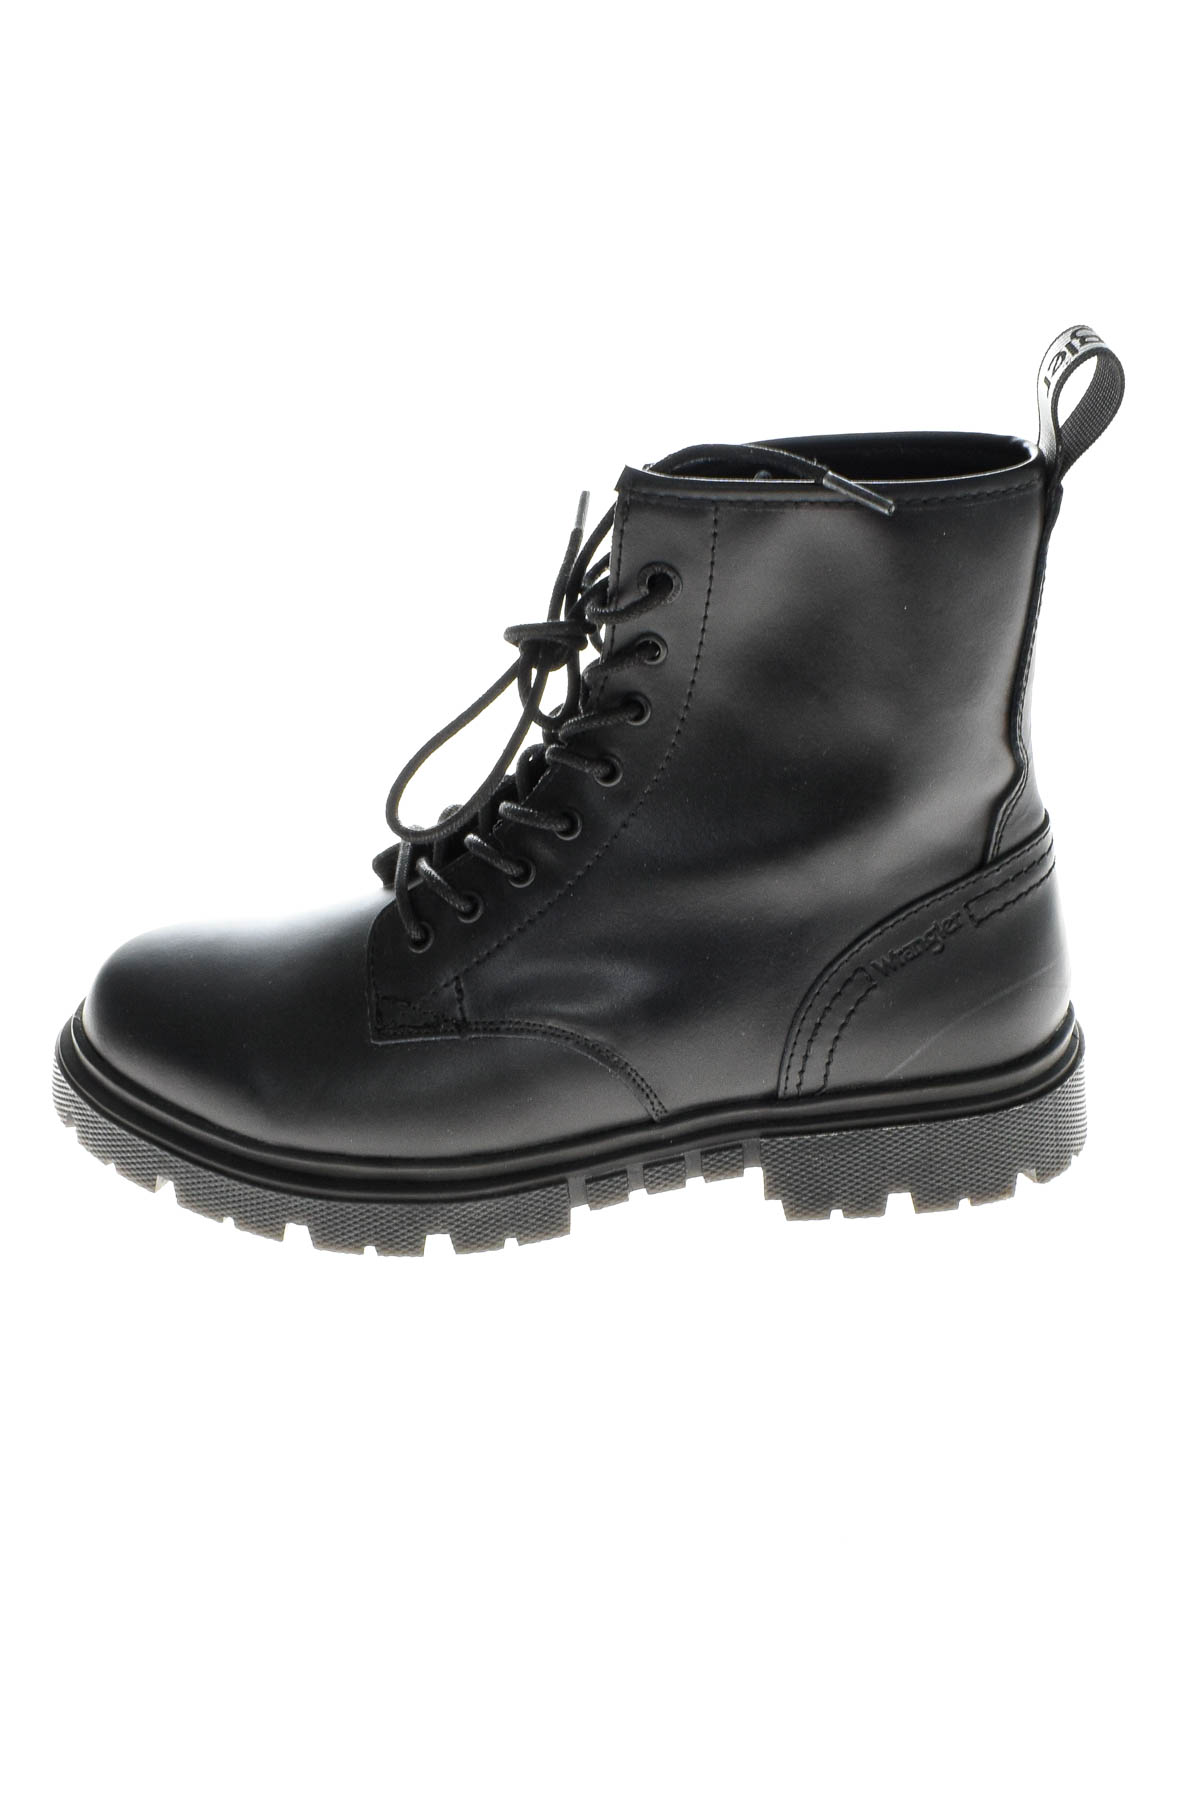 Men's boots - Wrangler - 0